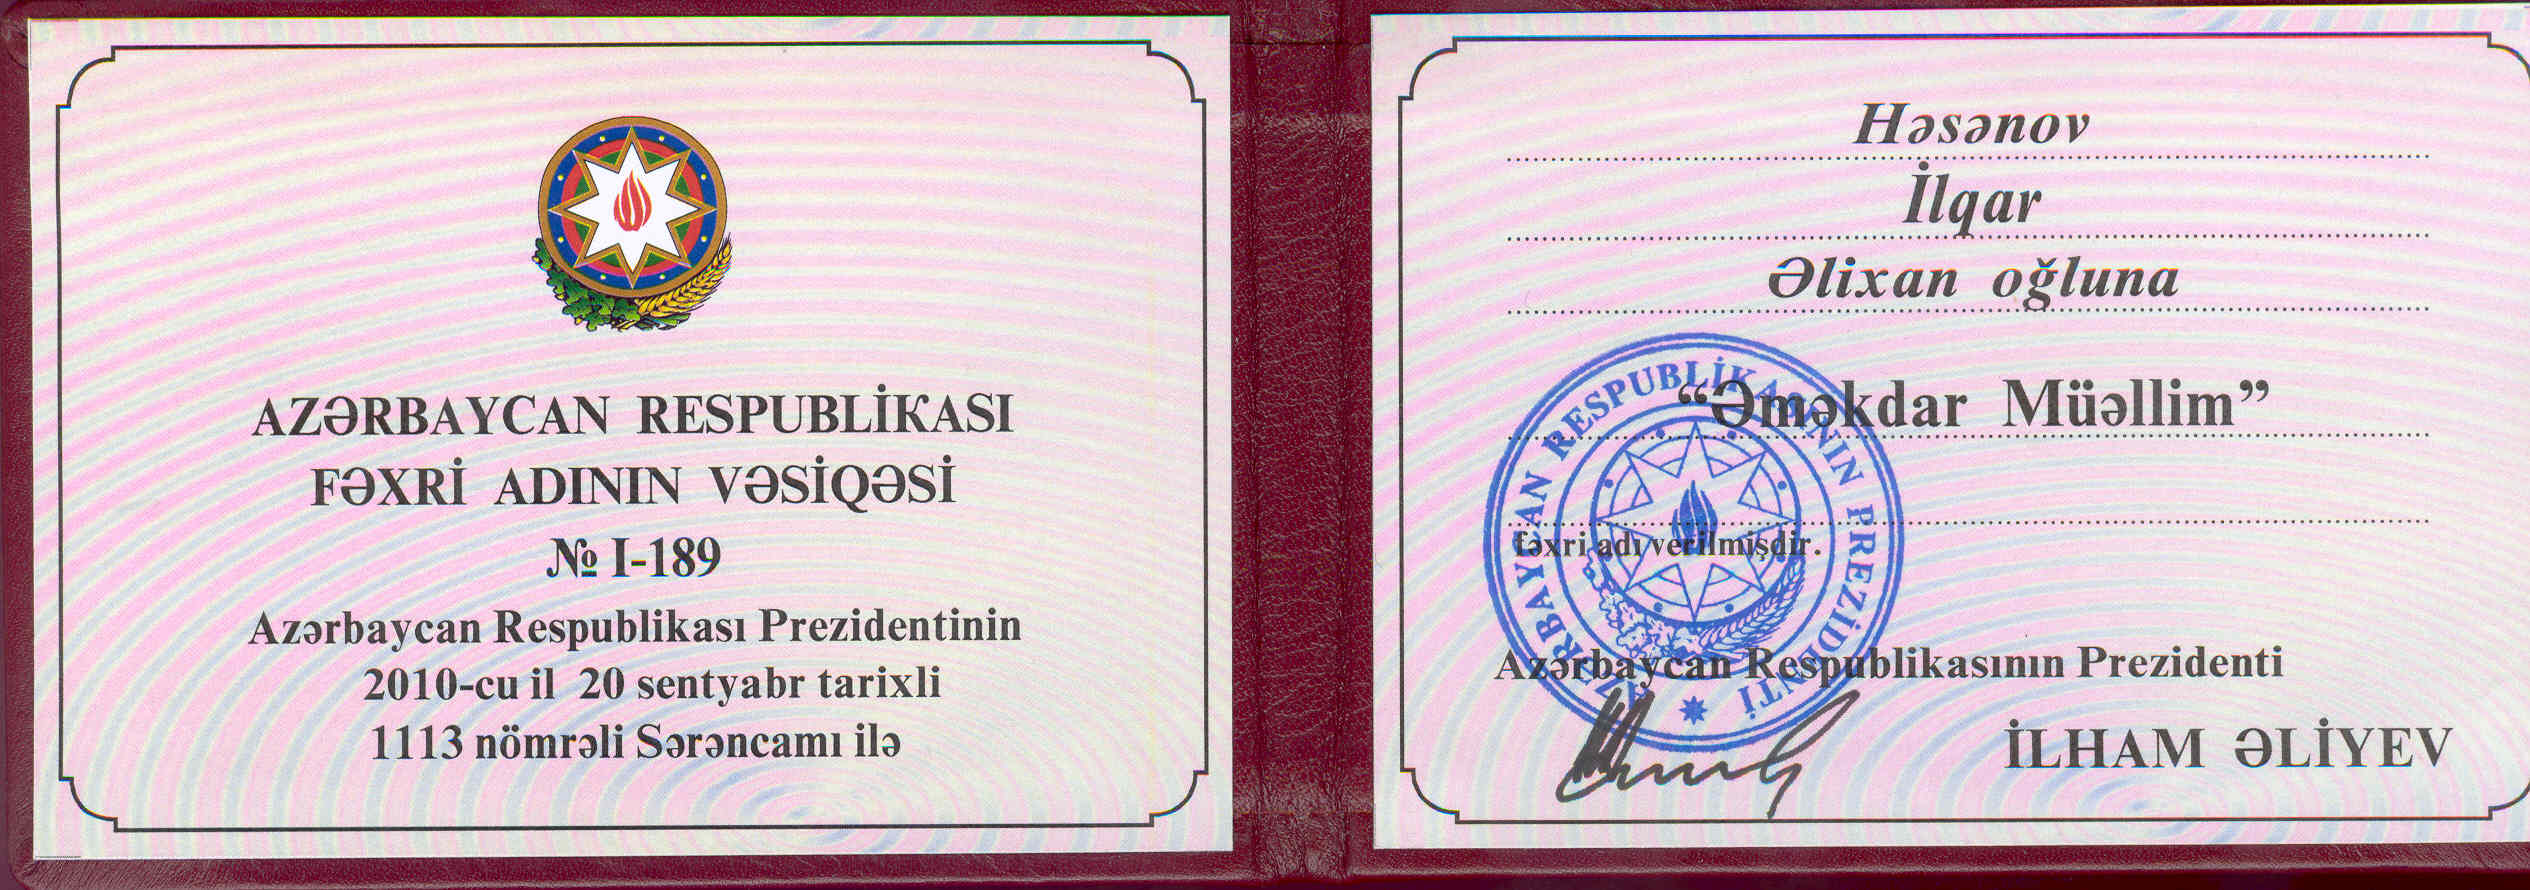 “Əməkdar Müəllim” - Azərbaycan Respublikası Prezidentinin Fərmanı     